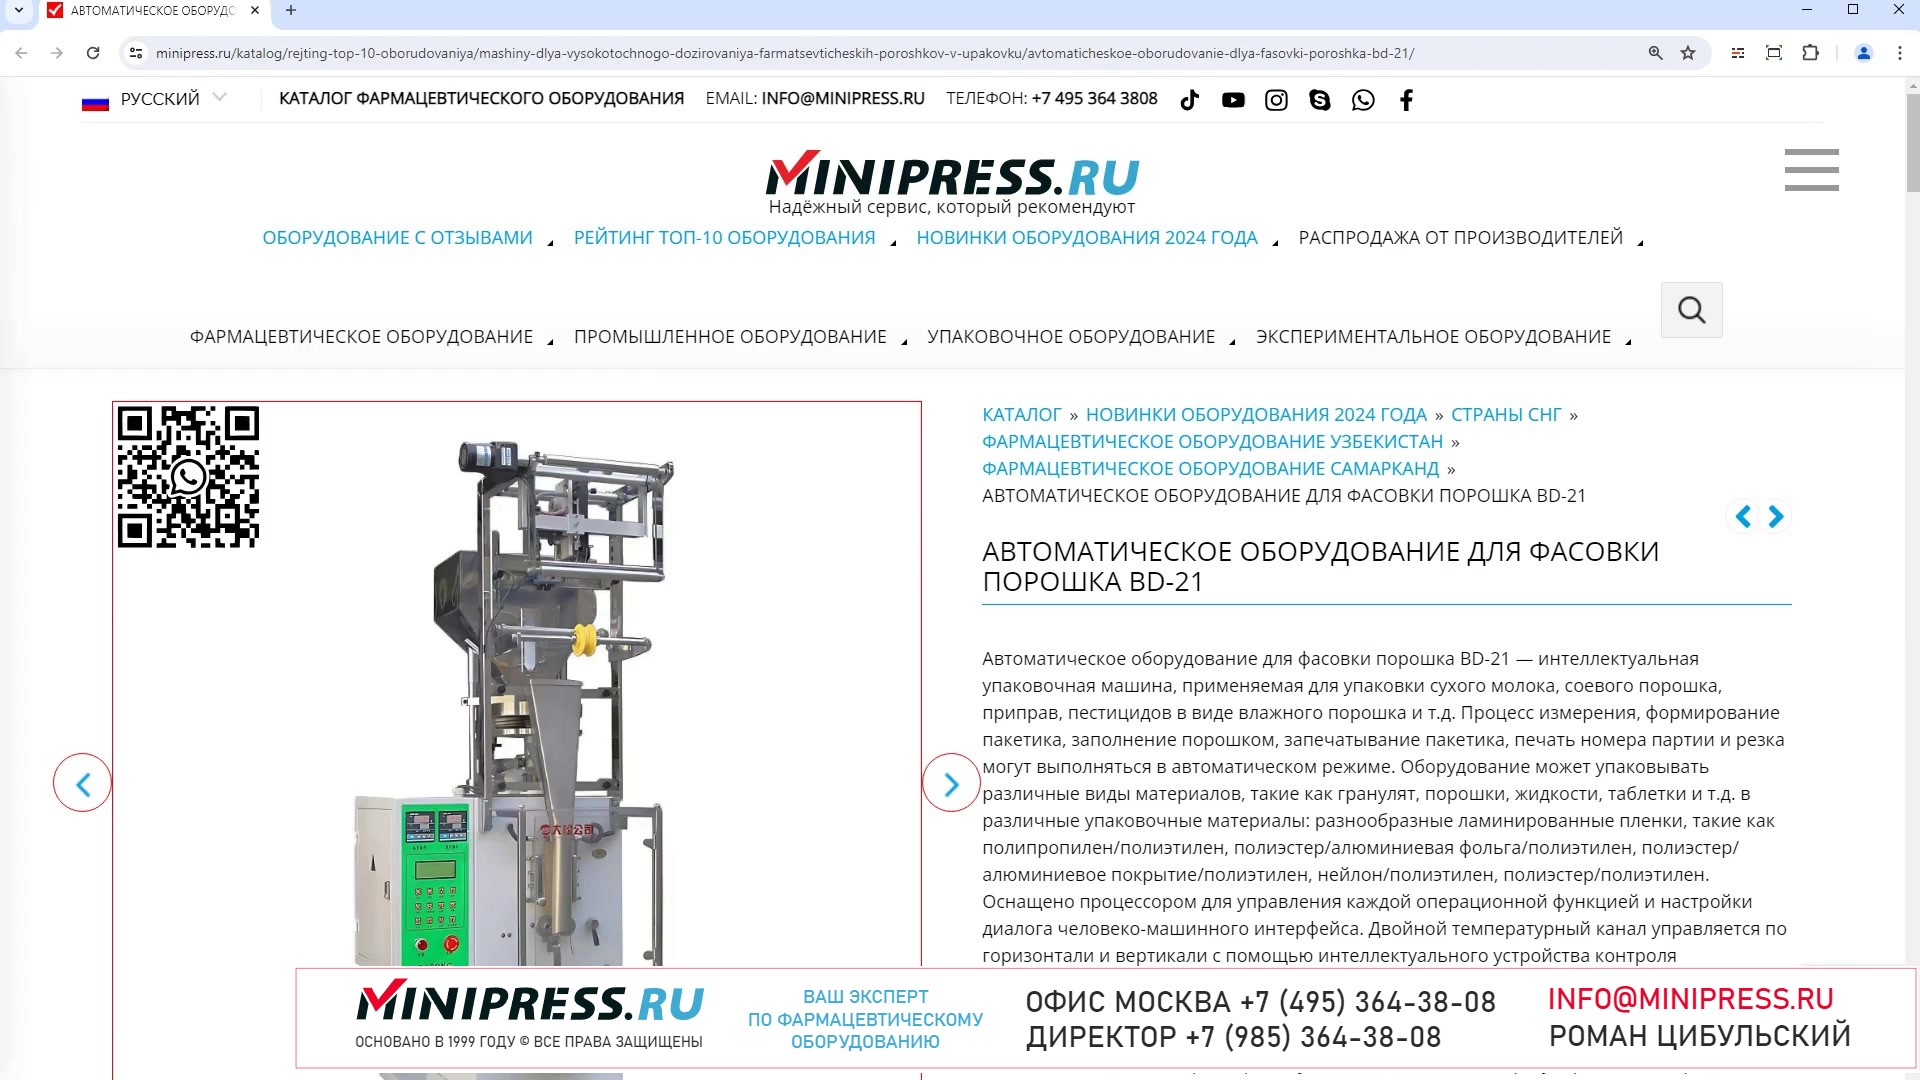 Minipress.ru Автоматическое оборудование для фасовки порошка BD-21